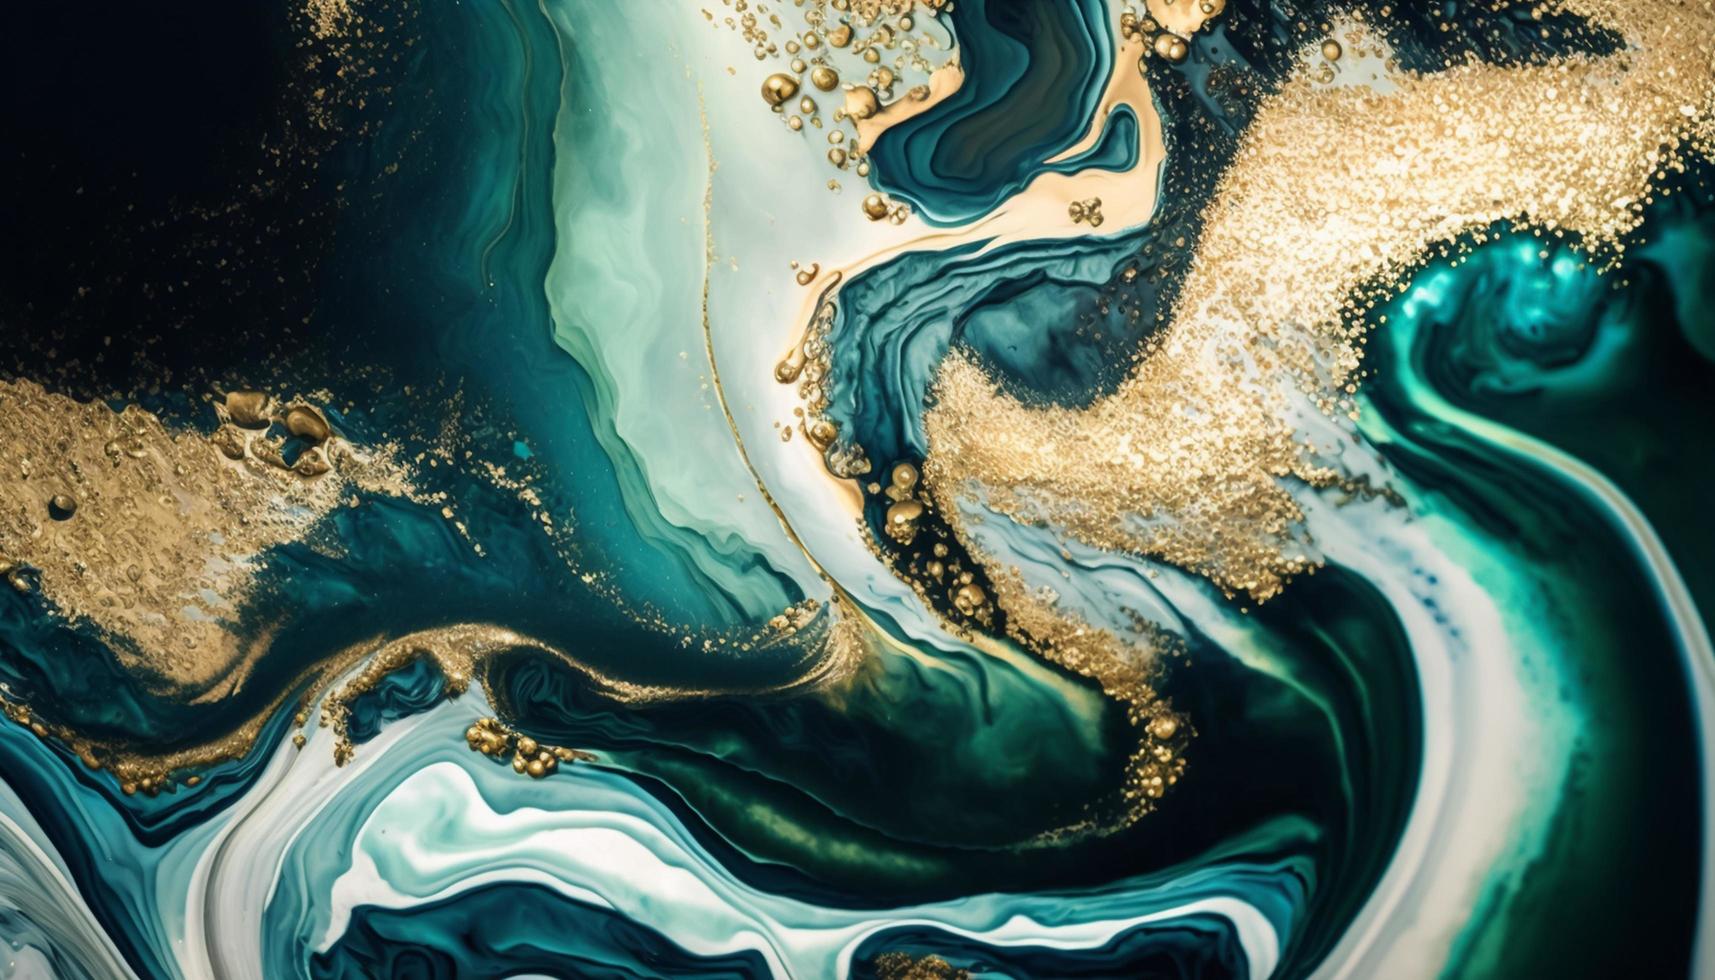 marmorizado azul e ouro oceano arte inspirado de oceano ondas foto